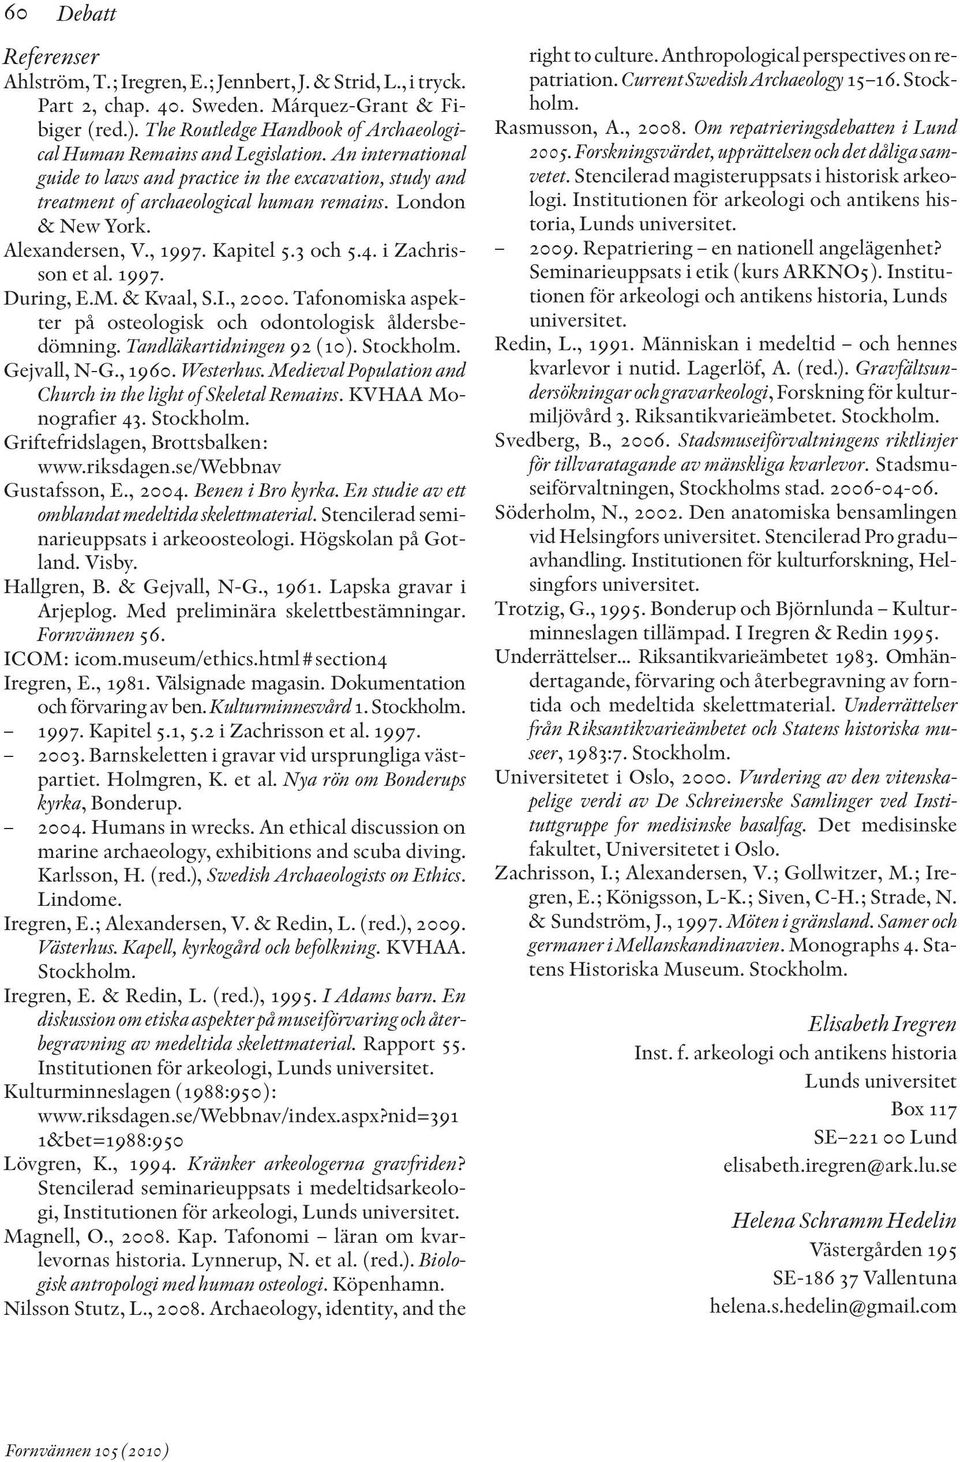 London & New York. Alexandersen, V., 1997. Kapitel 5.3 och 5.4. i Zachrisson et al. 1997. During, E.M. & Kvaal, S.I., 2000. Tafonomiska aspekter på osteologisk och odontologisk åldersbe - dömning.